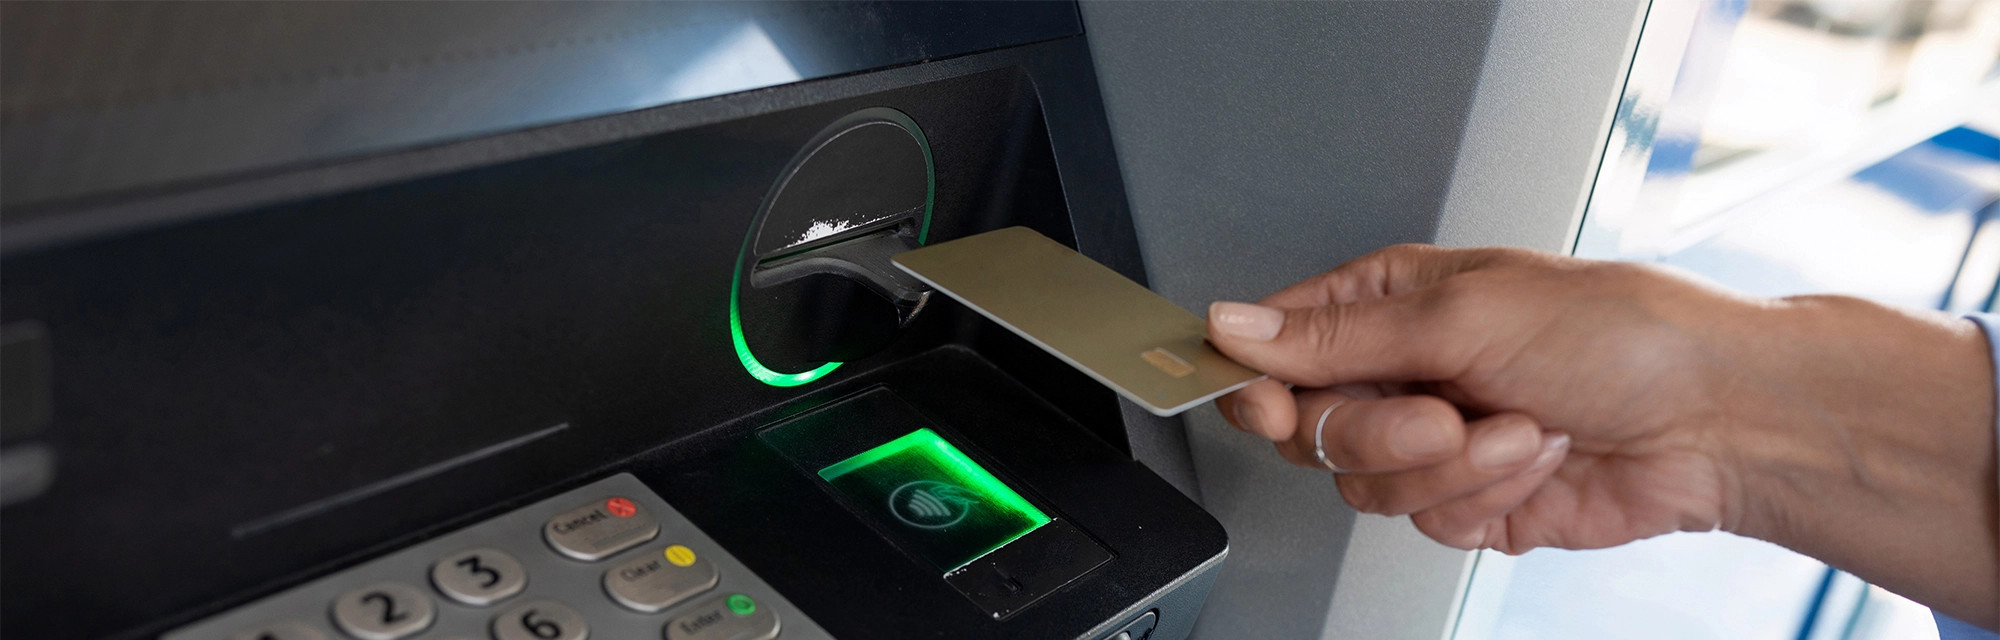 a female hand applies a bank card to an ATM